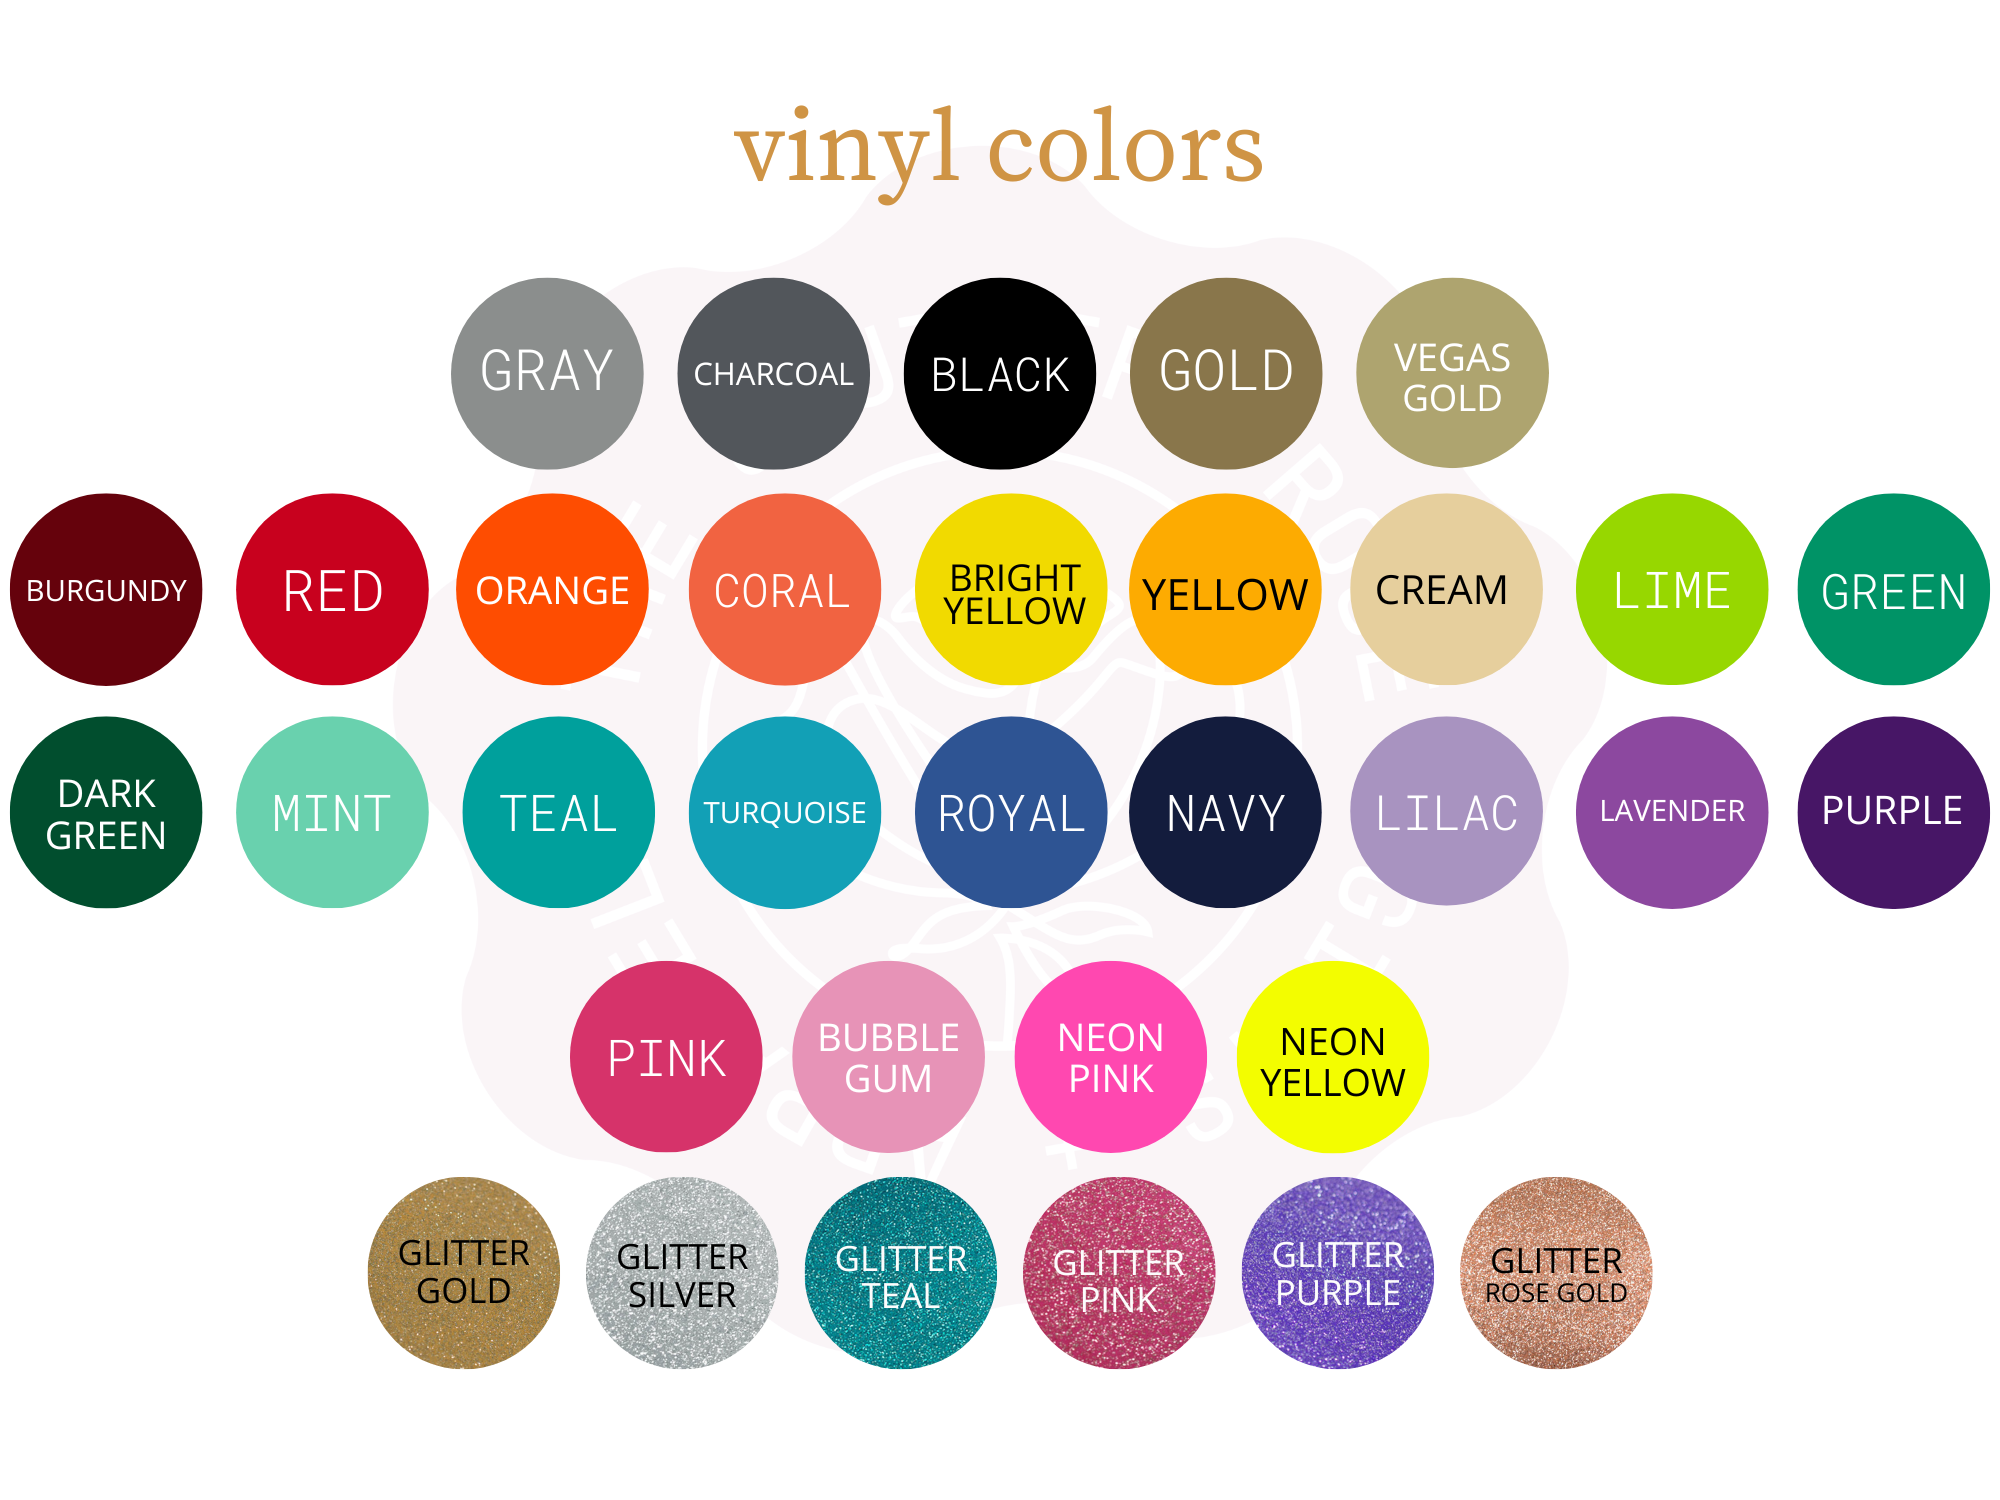 https://cdn11.bigcommerce.com/s-qiszfjgfwj/images/stencil/original/products/3916/15758/tsr2-vinyl-colors__68962.1685721689.png?c=2